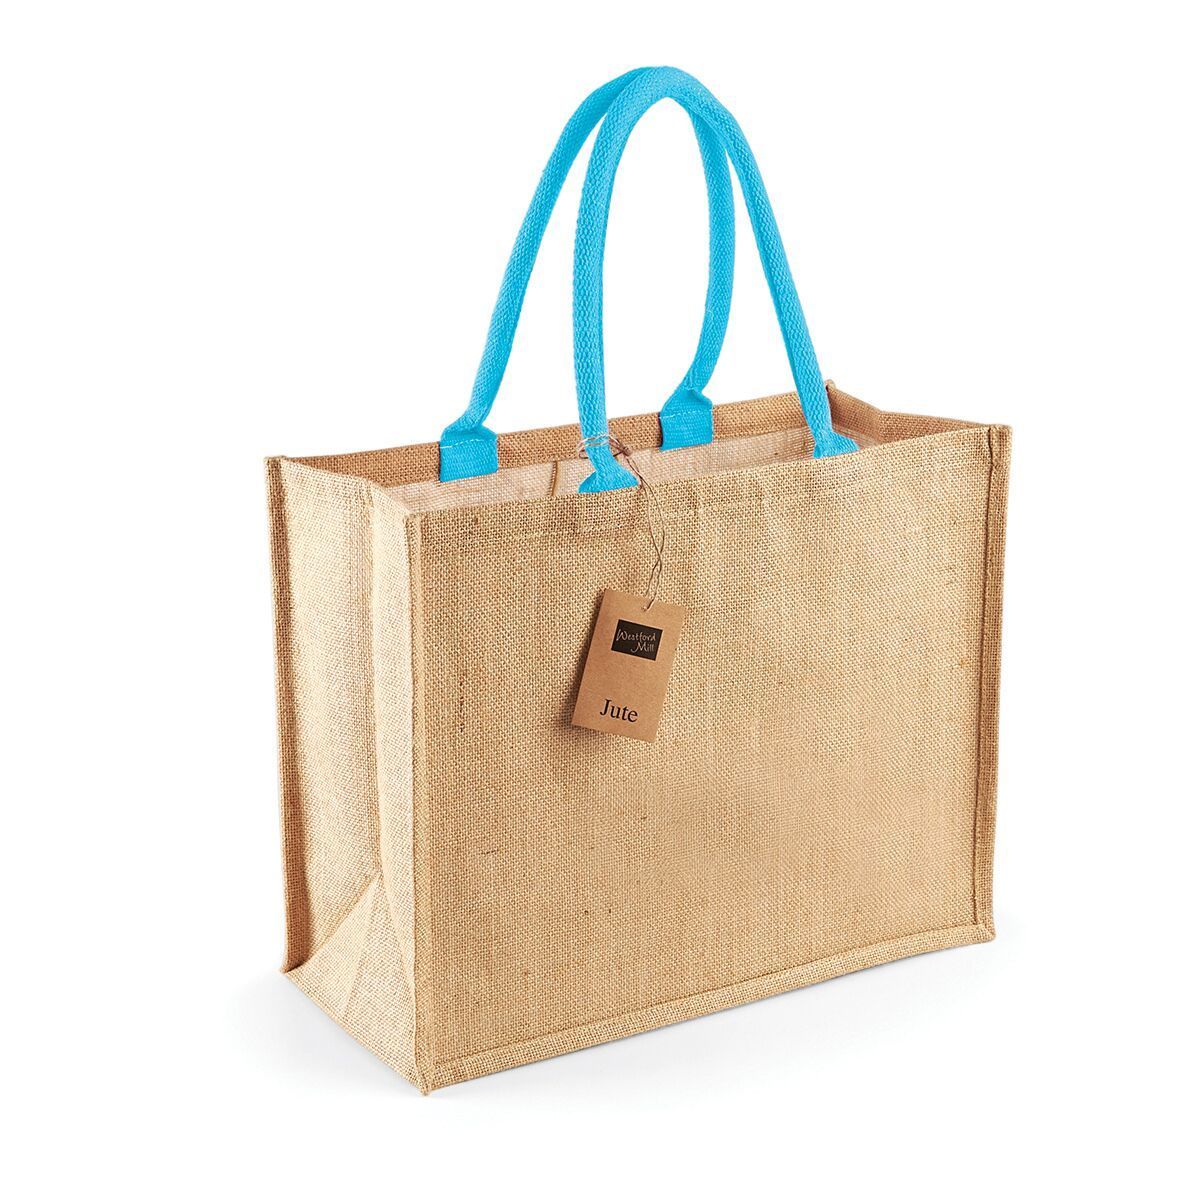 New Classic Jute Tote Natural Shopper Shoulder Bag